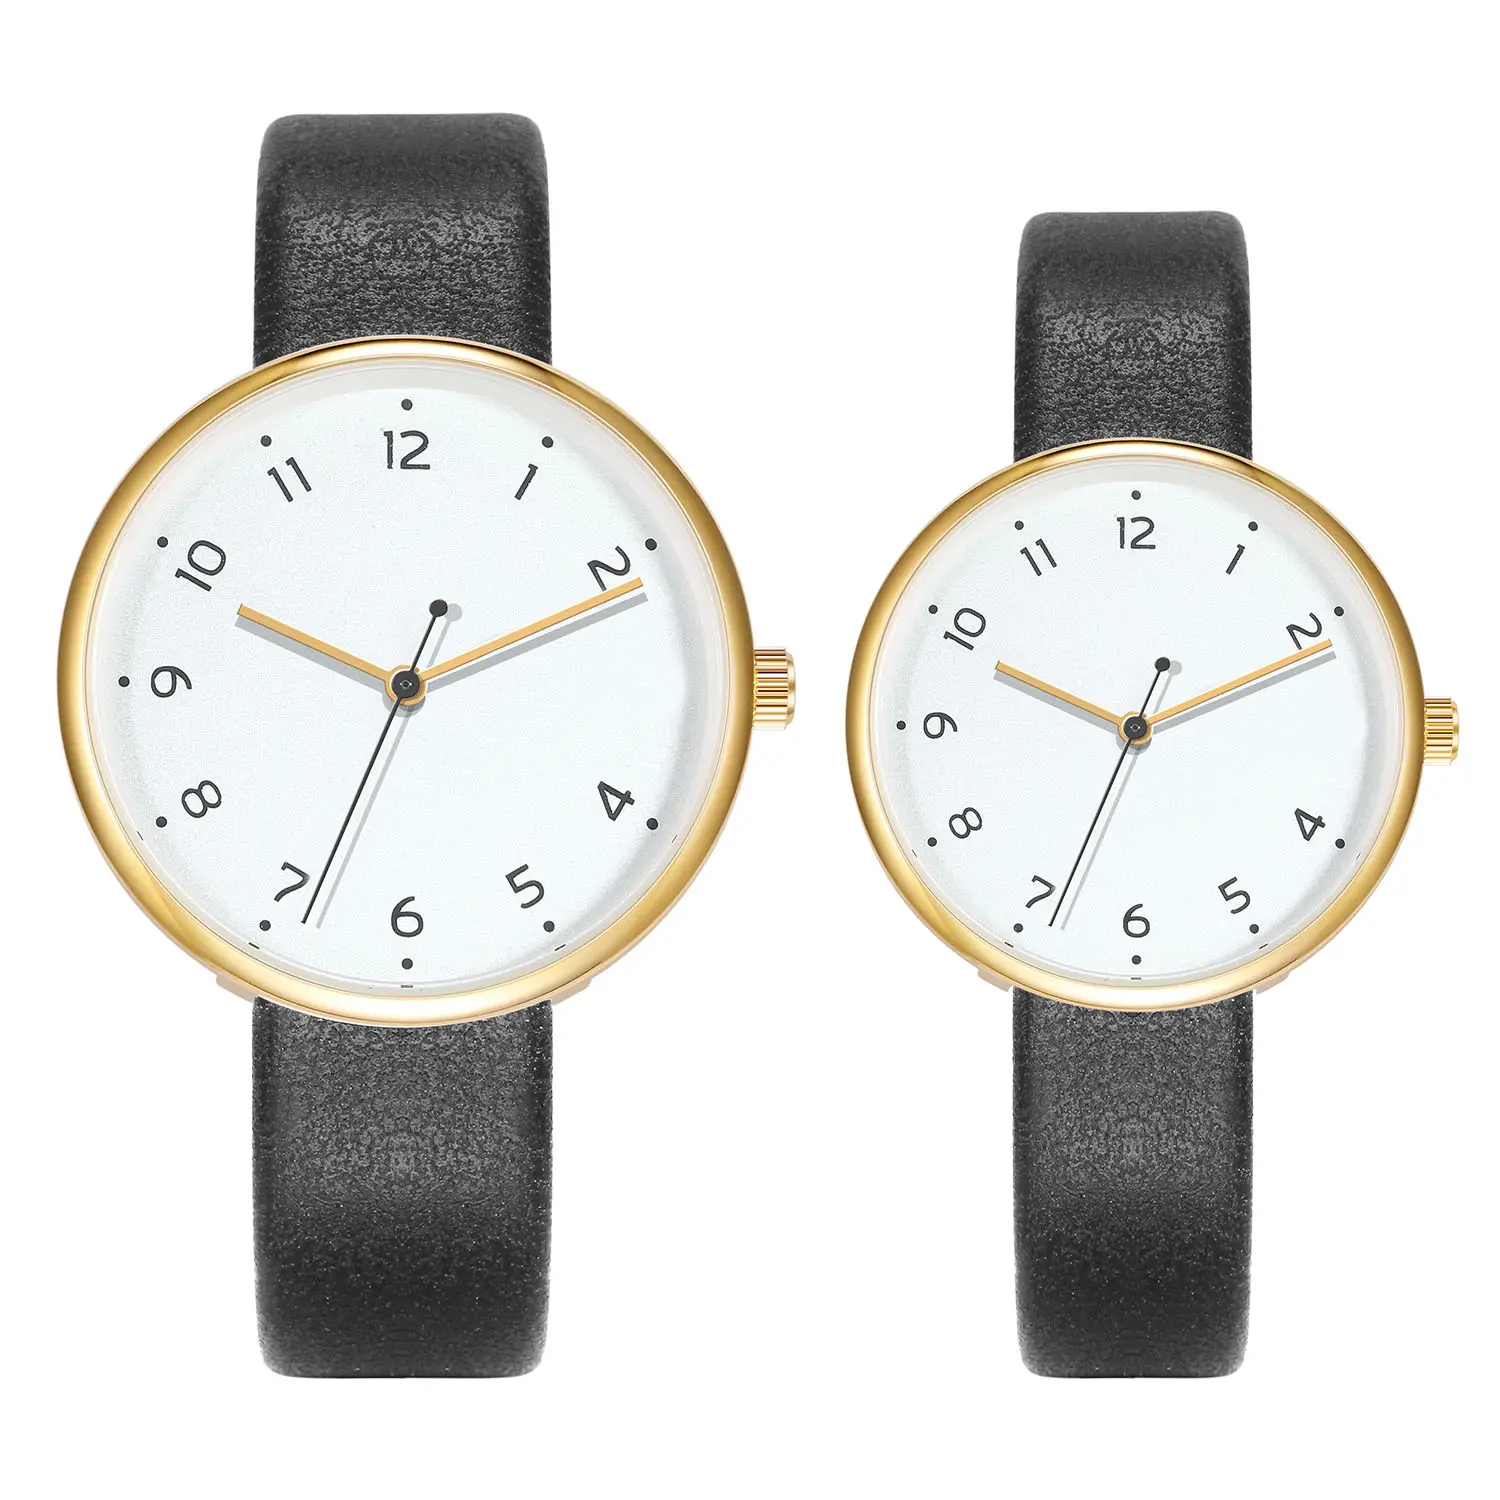 Venda Direta Da Fábrica Moda Elegante Relógio Macaron Moda Versátil Simples Senhoras Quartz Relógios De Couro Genuíno Relógio De Pulso